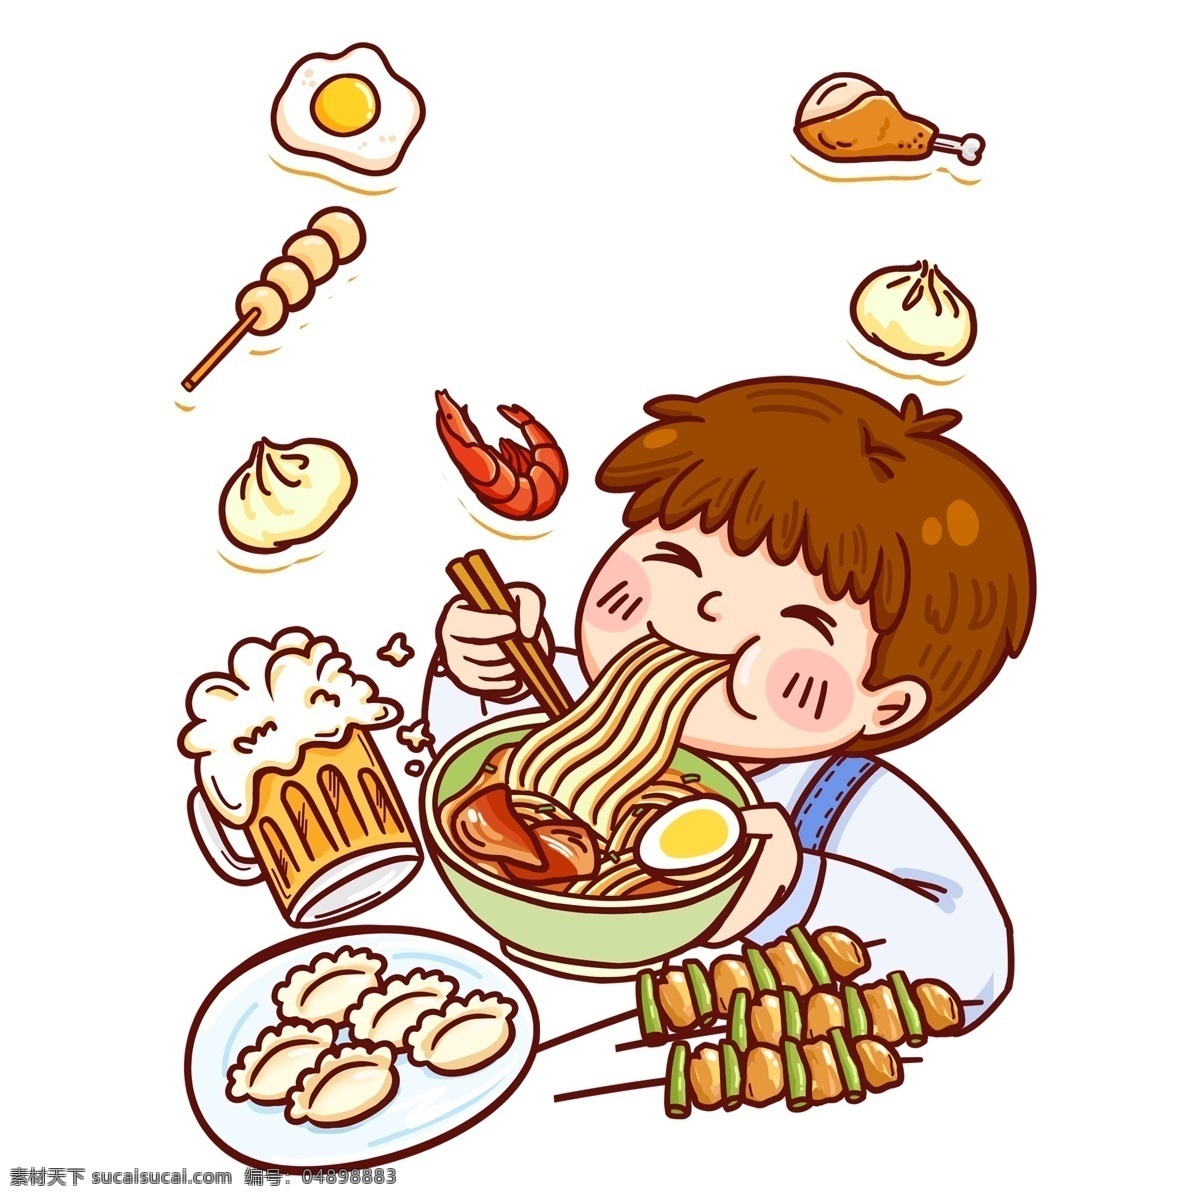 彩绘 吃货 节 吃 面的 男孩 人物 插画 漫画 317 吃货节 手绘 吃面 小男孩